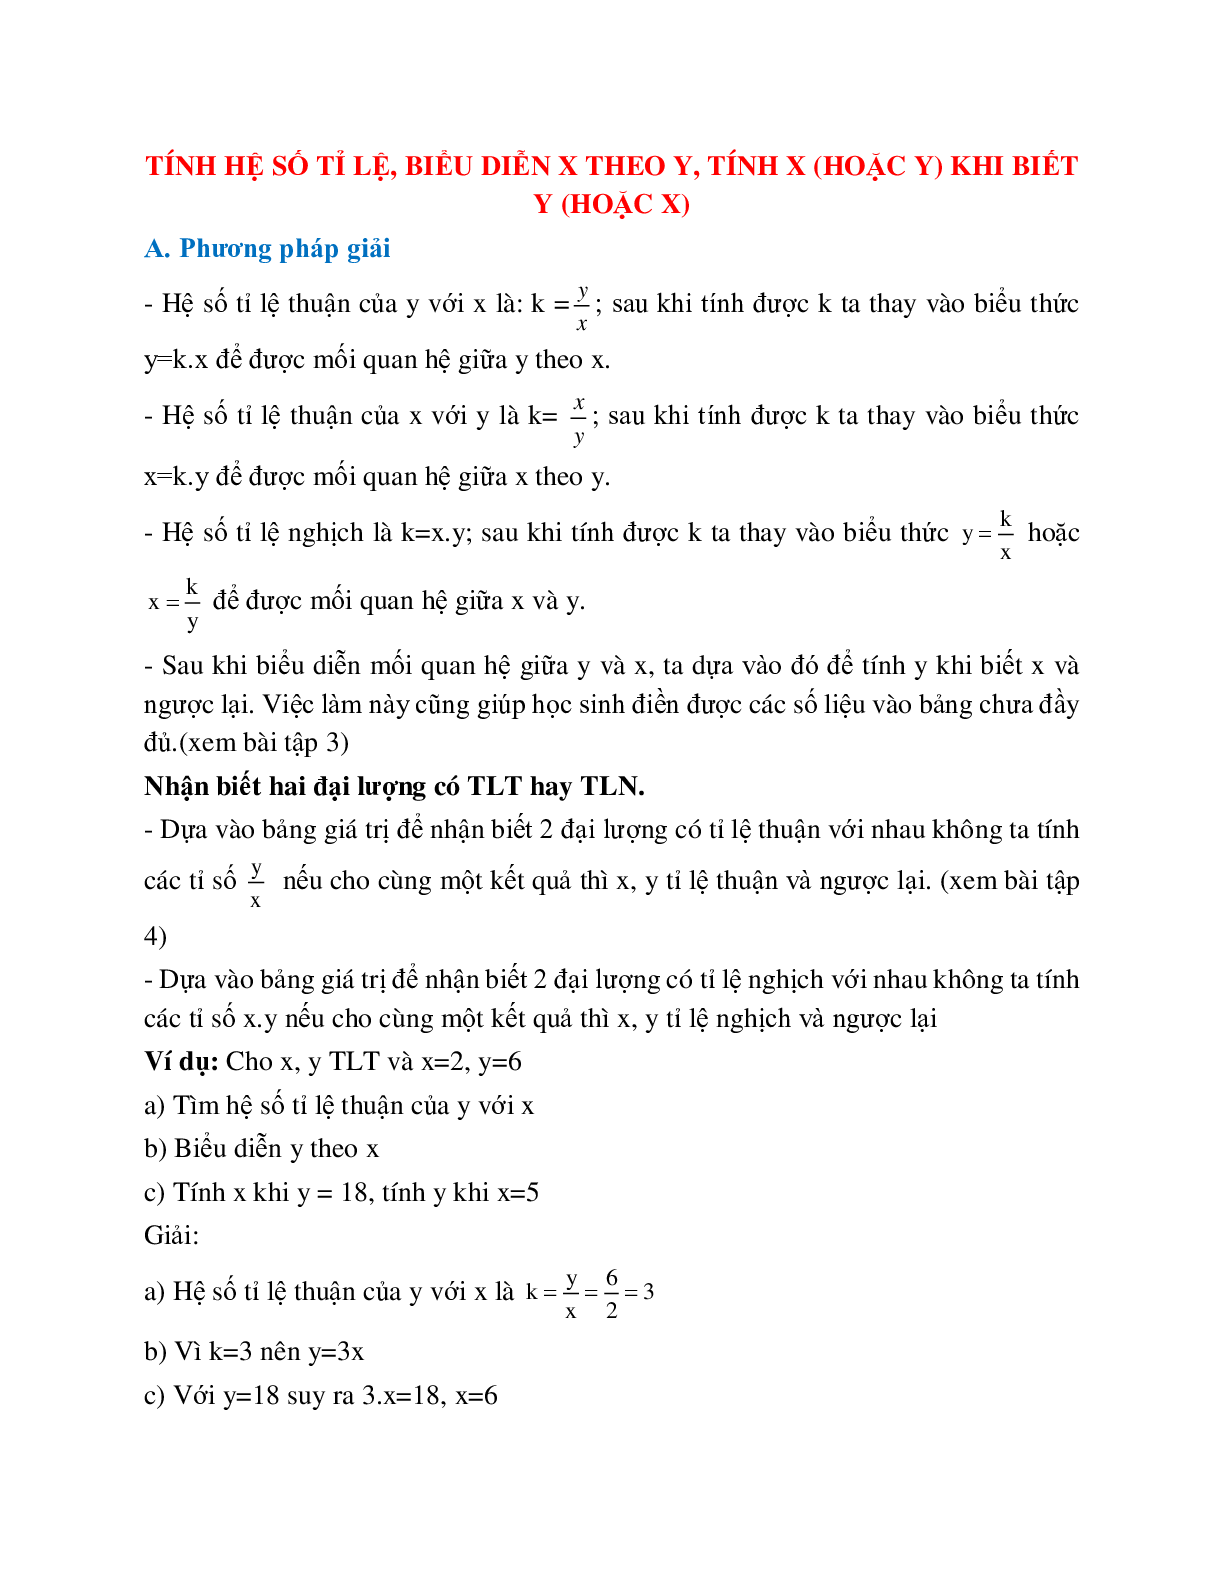 Cách giải Tính hệ số tỉ lệ, biểu diễn x theo y, tính x (hoặc y) khi biết y (hoặc x) (trang 1)